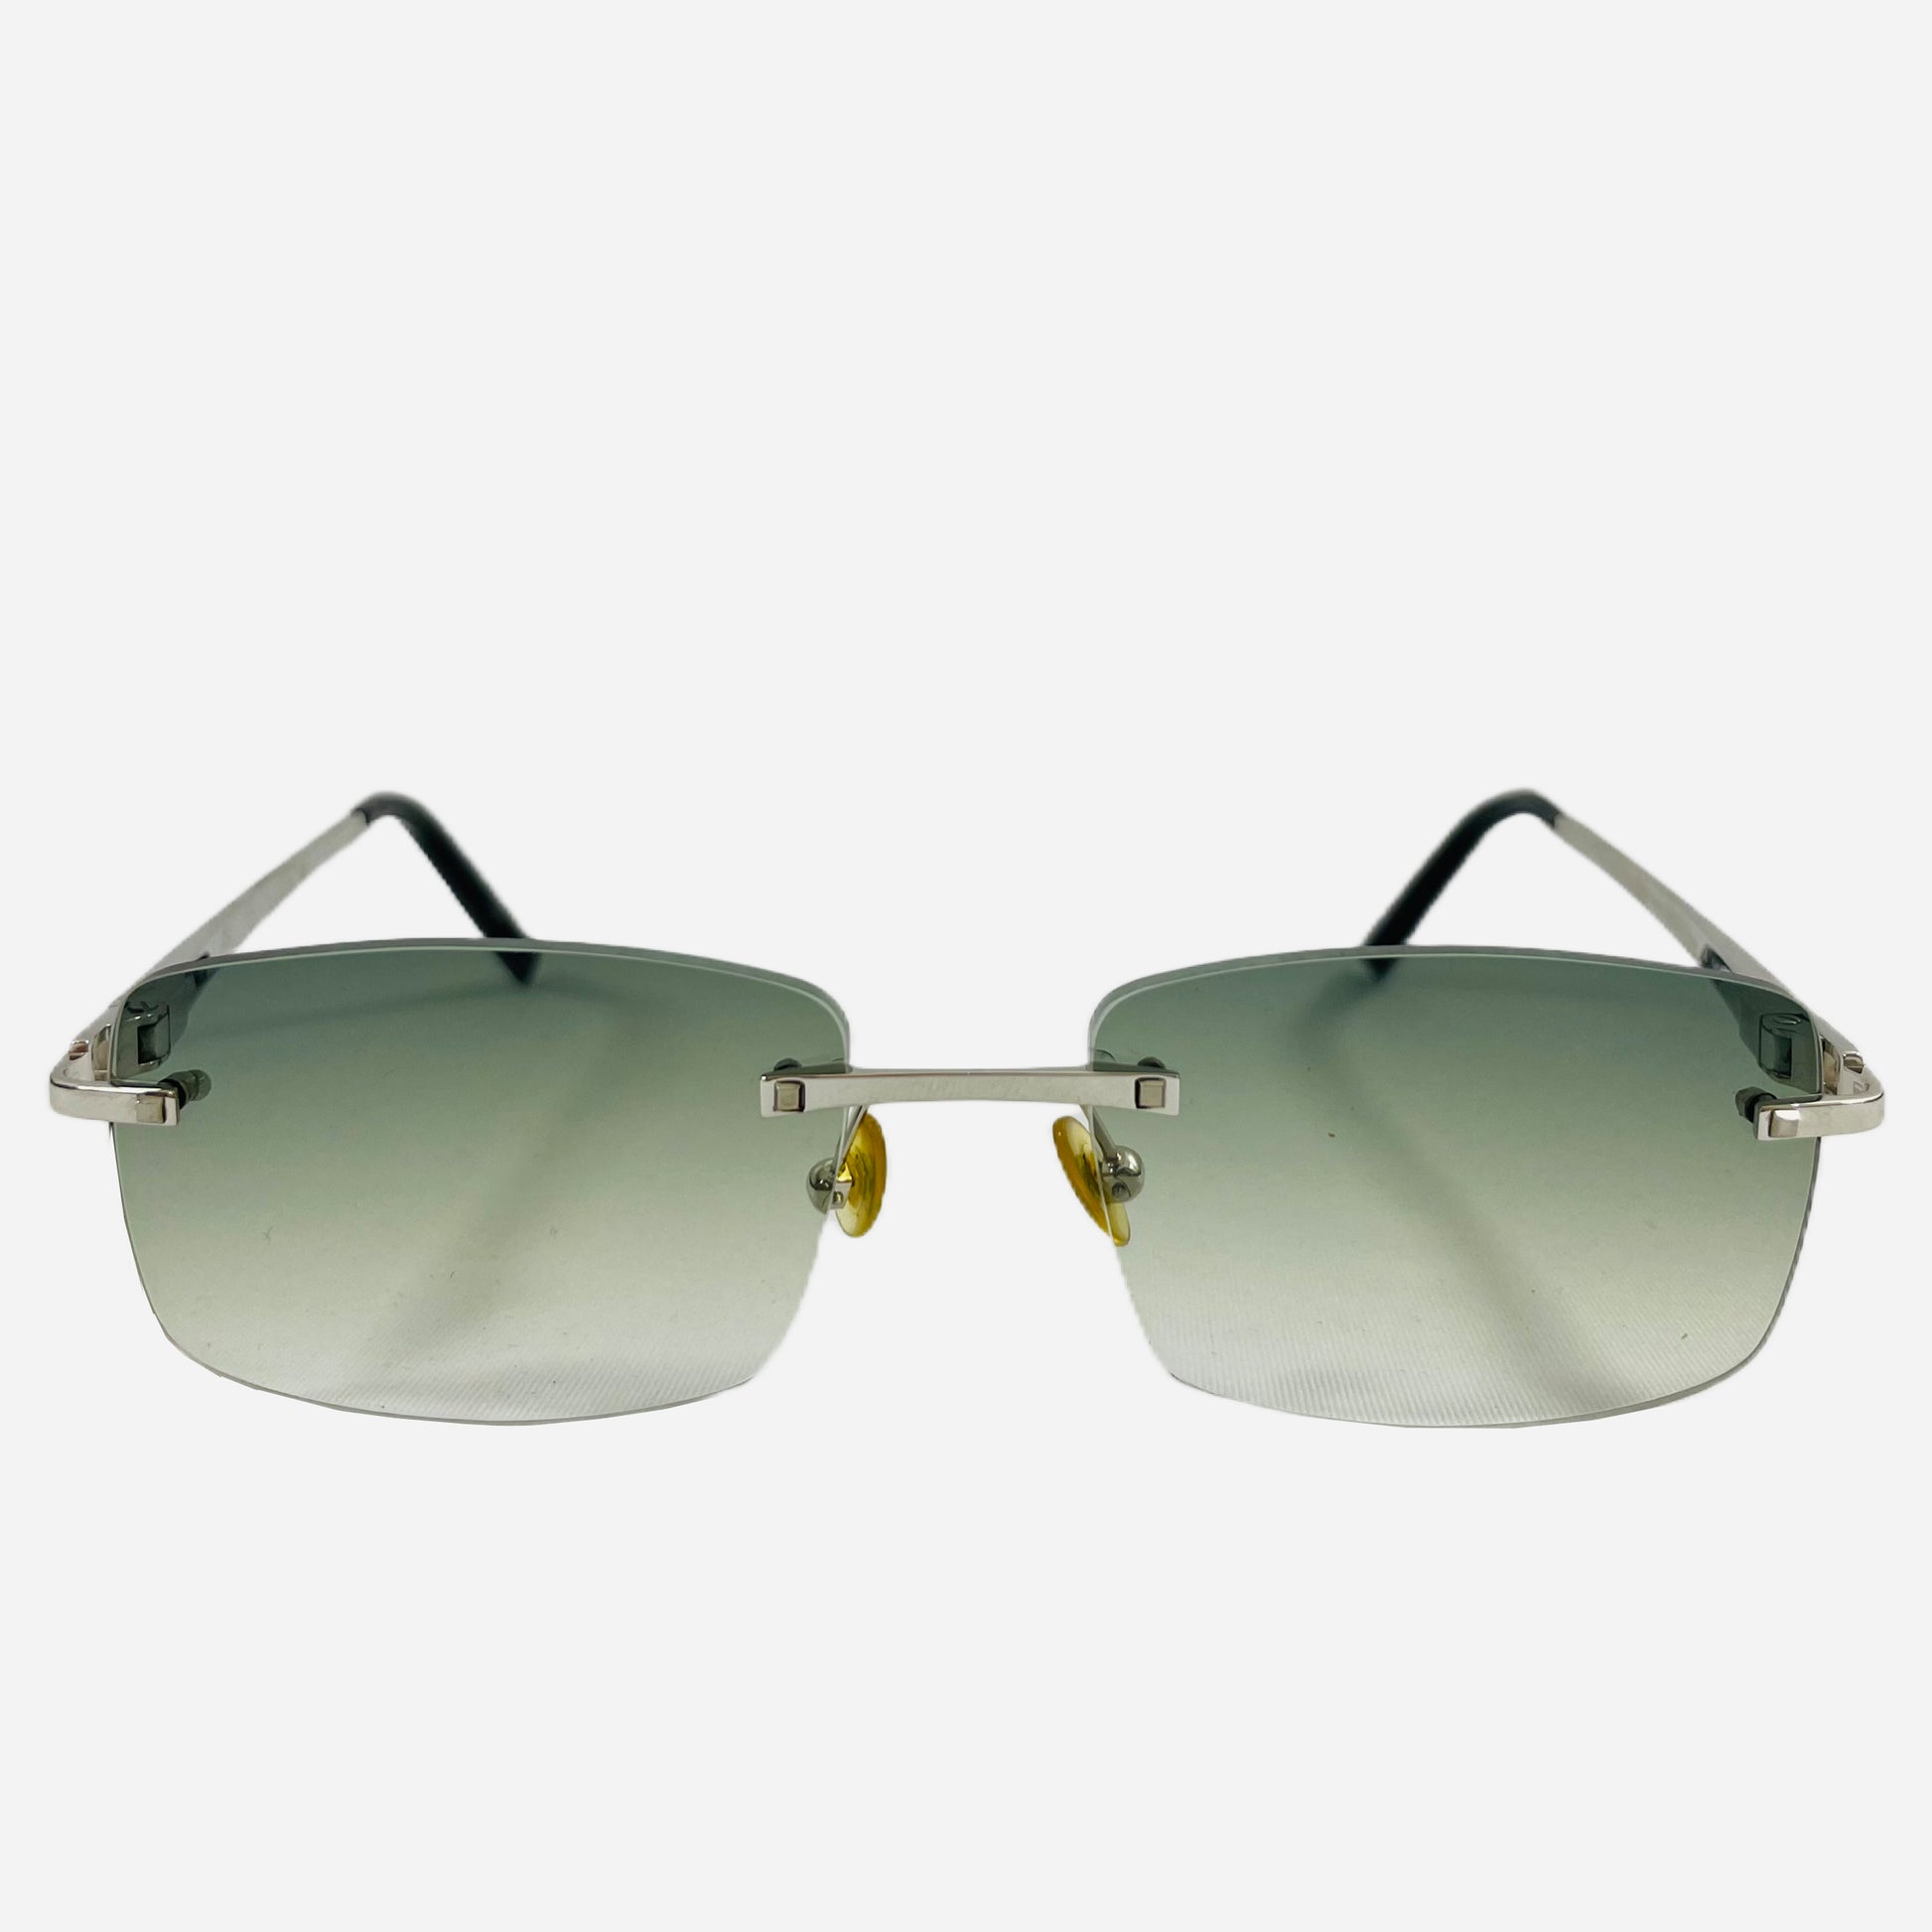 Fred-Paris-Sonnenbrille-Sunglasses-Jamaique-rimless-rahmenlose-Sonnenbrille-the-seekers-front